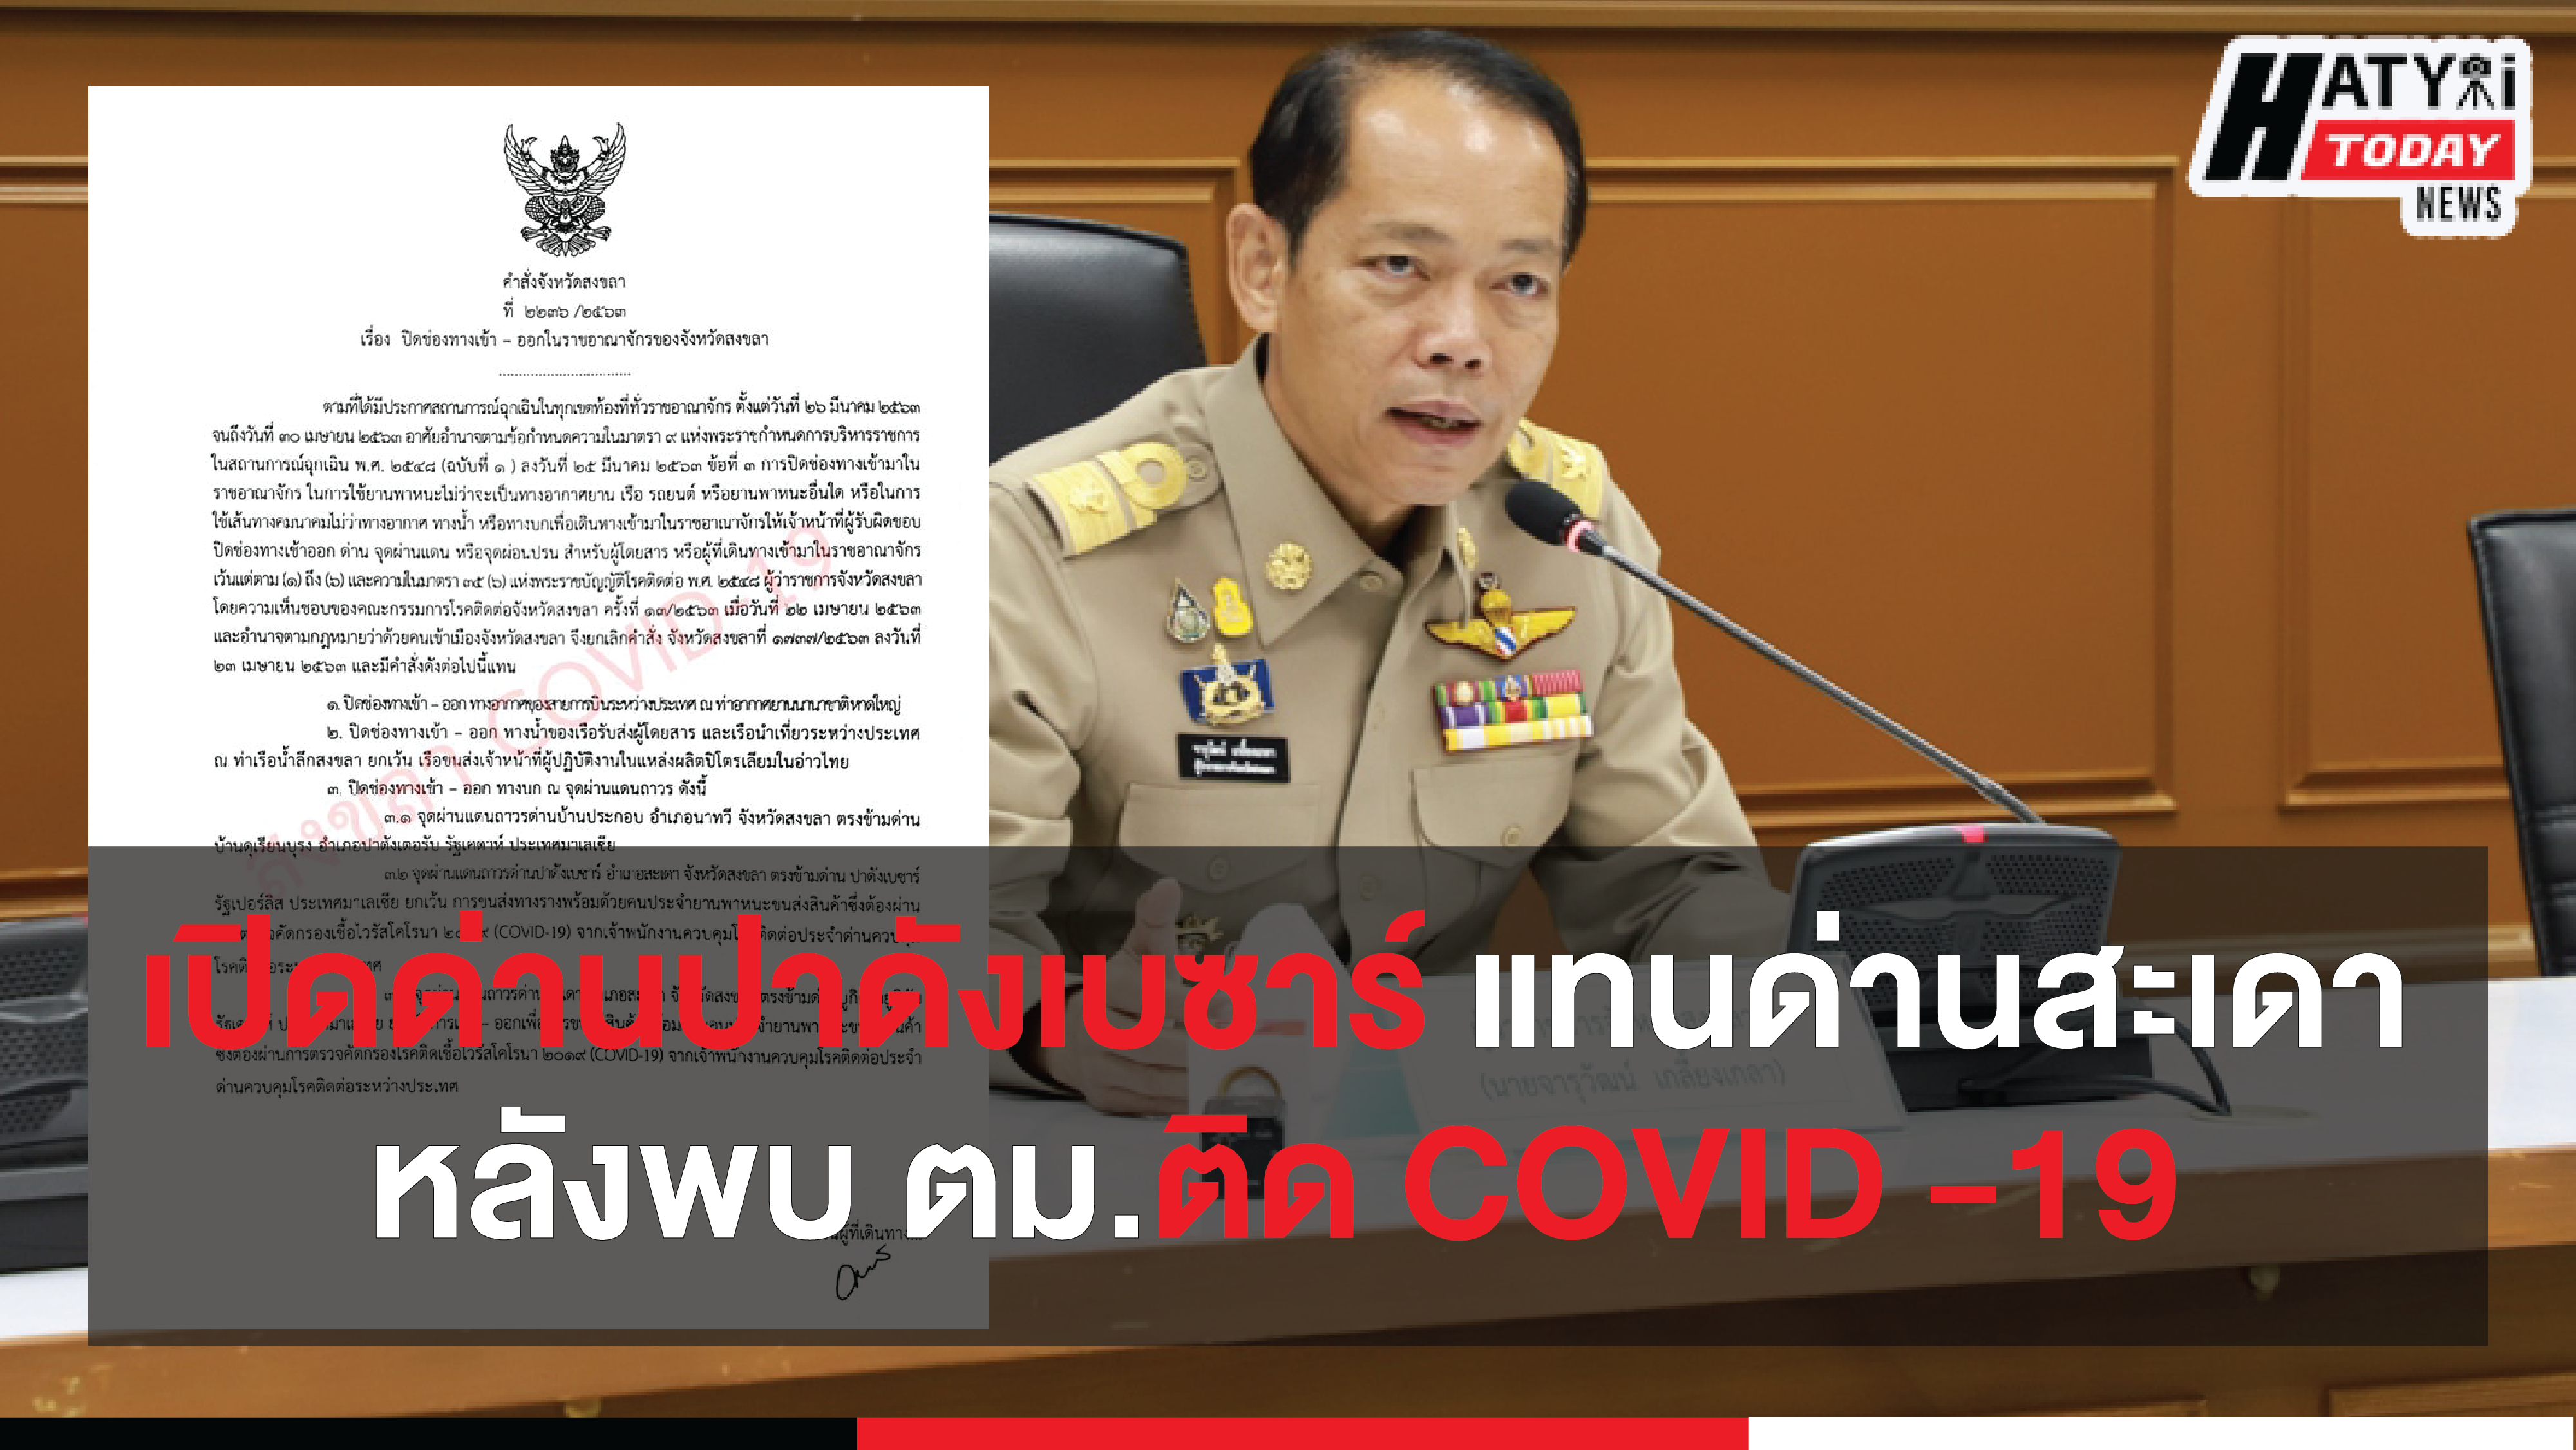 สงขลาปรับเปลี่ยนช่องทางรับคนไทยจากมาเลเซีย เตรียมเปิดด่านปาดังเบซาร์ แทนด่านสะเดาหลังพบตม.ติด COVID -19